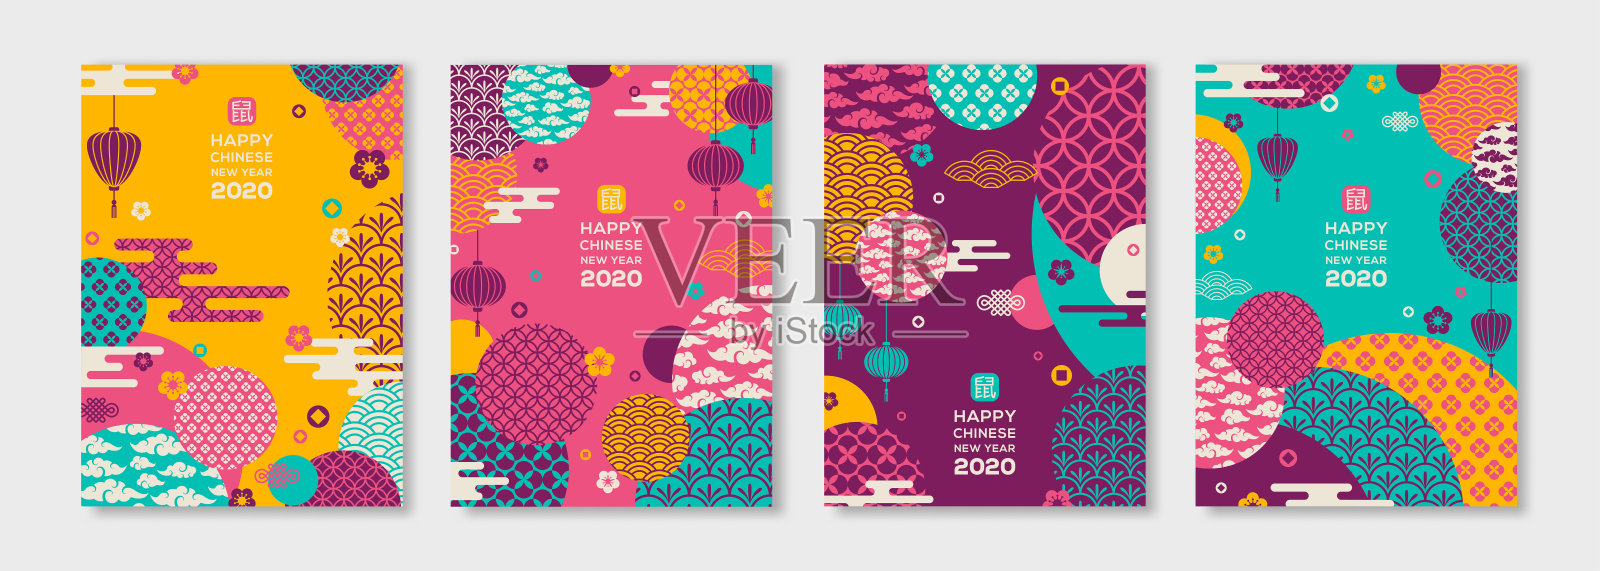 2020中国新年海报设计模板素材